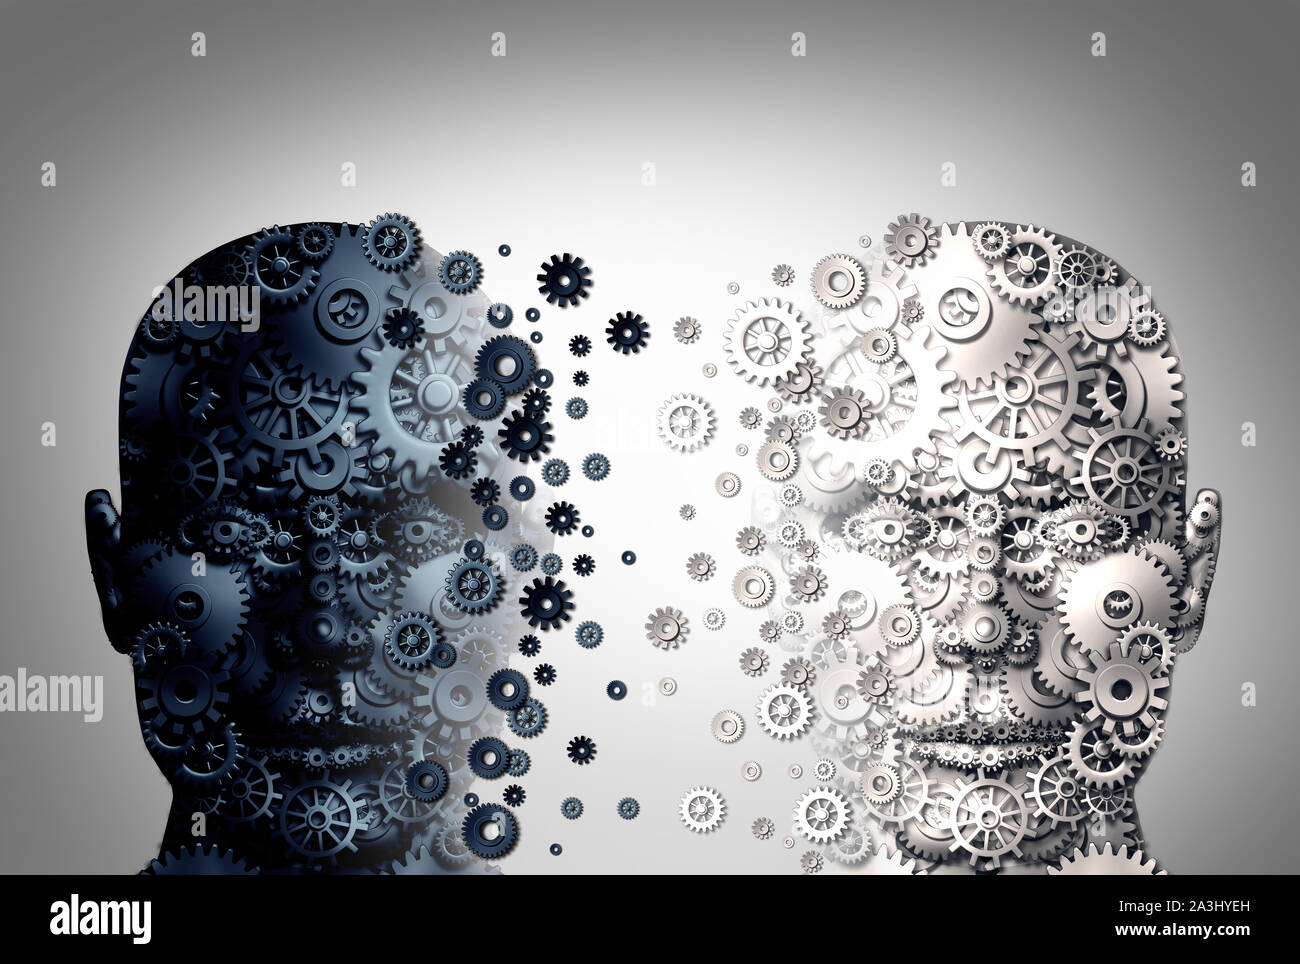 Mania bipolare immagini e fotografie stock ad alta risoluzione - Alamy